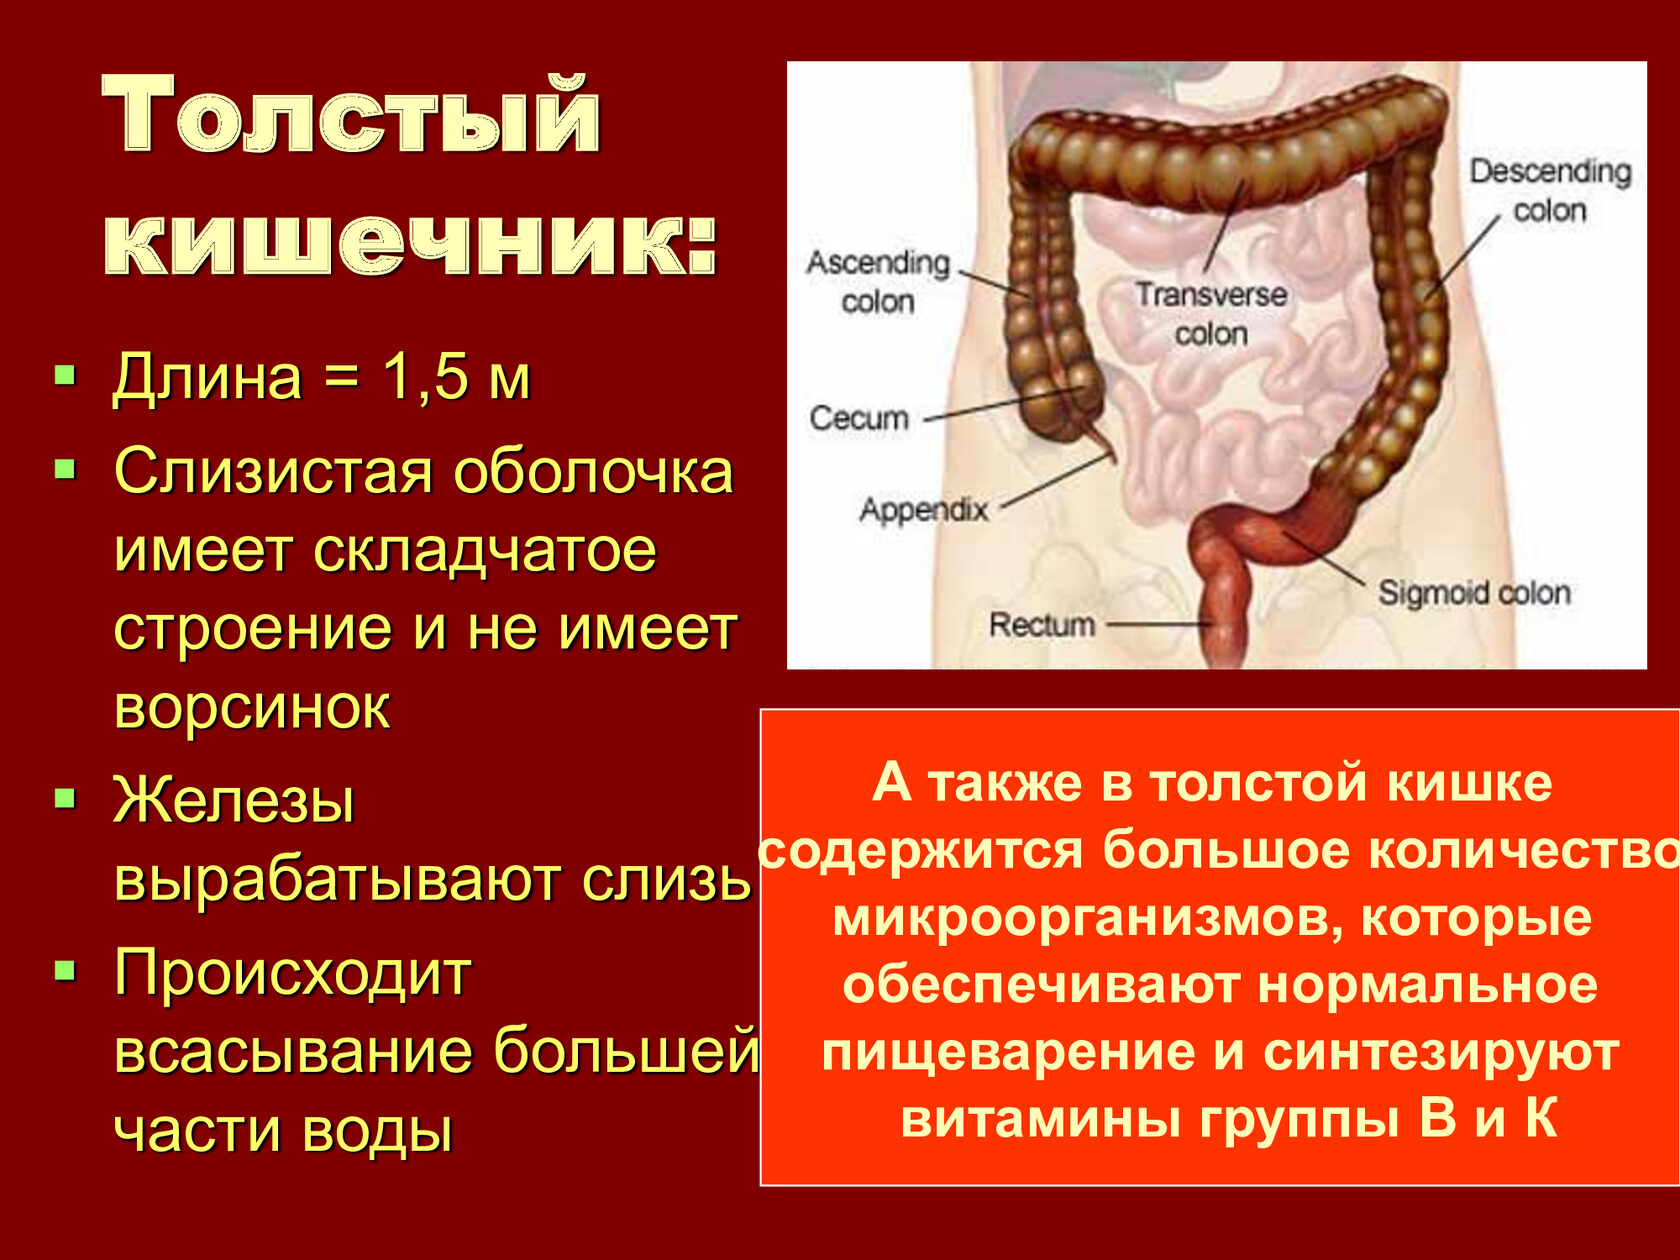 Какой длины толстая кишка. Пищеварительная система схема тонкий кишечник. Пищеварительная система человека анатомия тонкий кишечник. Оболочки толстой кишки анатомия. Пищеварительная система тонкий и толстый кишечник.